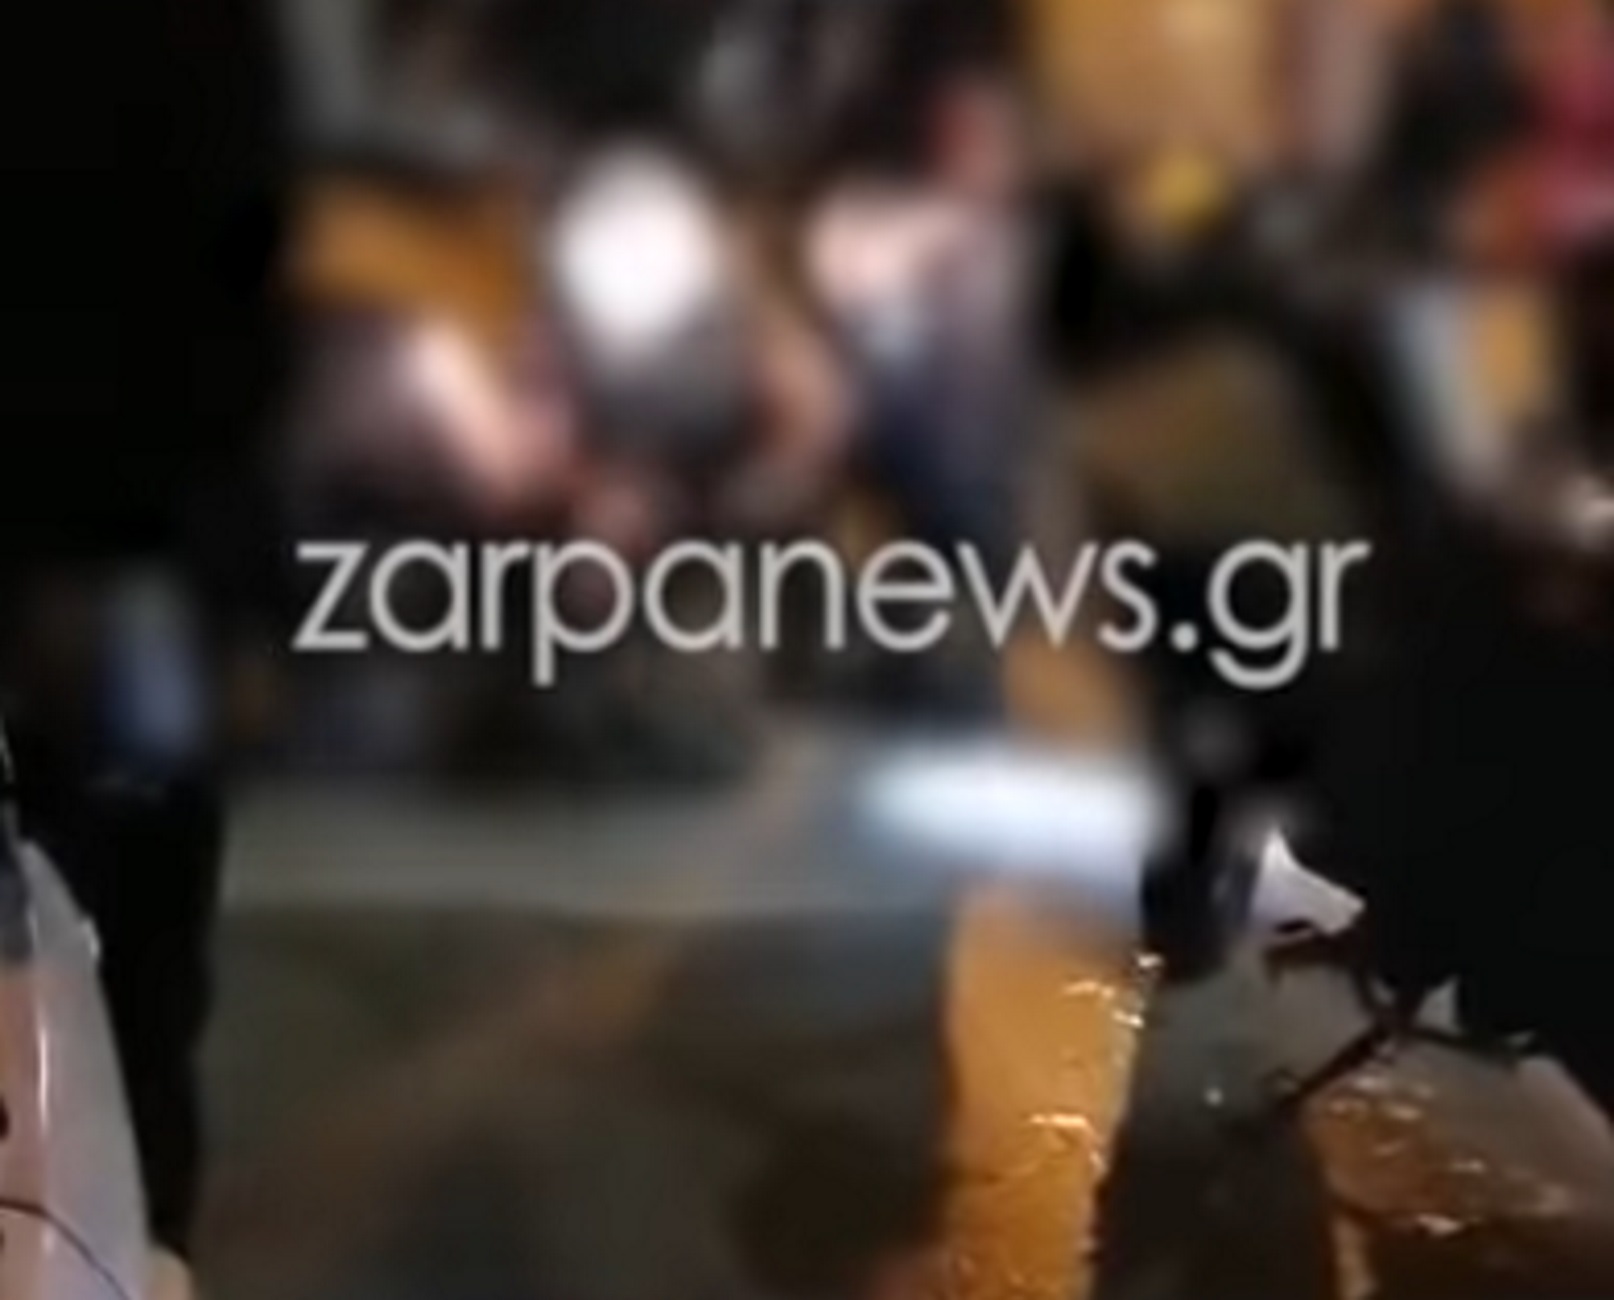 Χανιά: Στην κάμερα η στιγμή που αστυνομικοί αφοπλίζουν νεαρό! Πανικός κοντά στο Ενετικό Λιμάνι (Βίντεο)